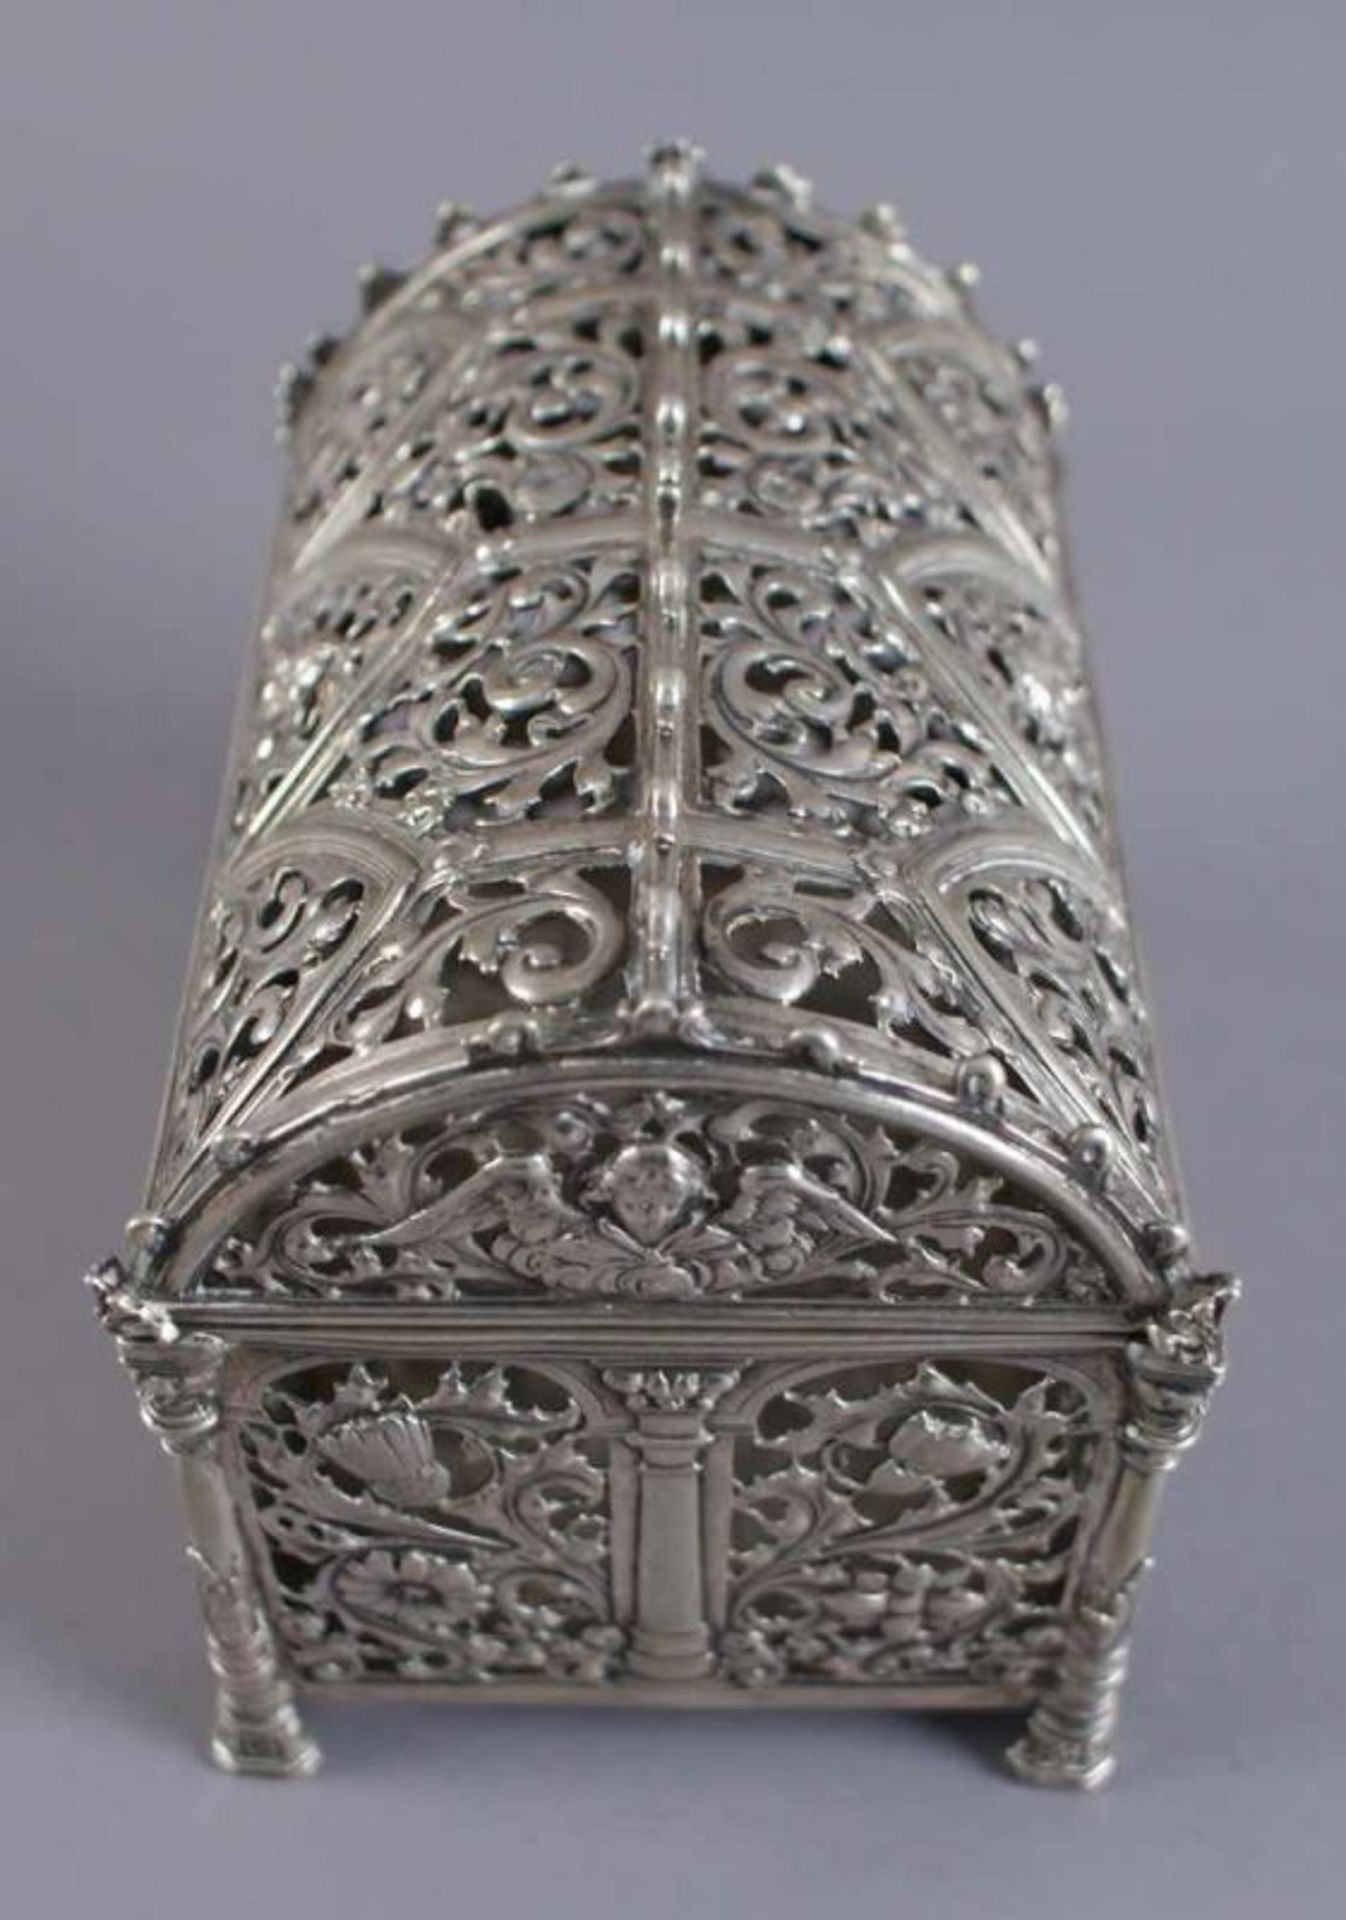 Silber Runddeckeltruhe, fein getrieben, durchbrochen gearbeitet, mit gotischen und floralen - Bild 11 aus 11